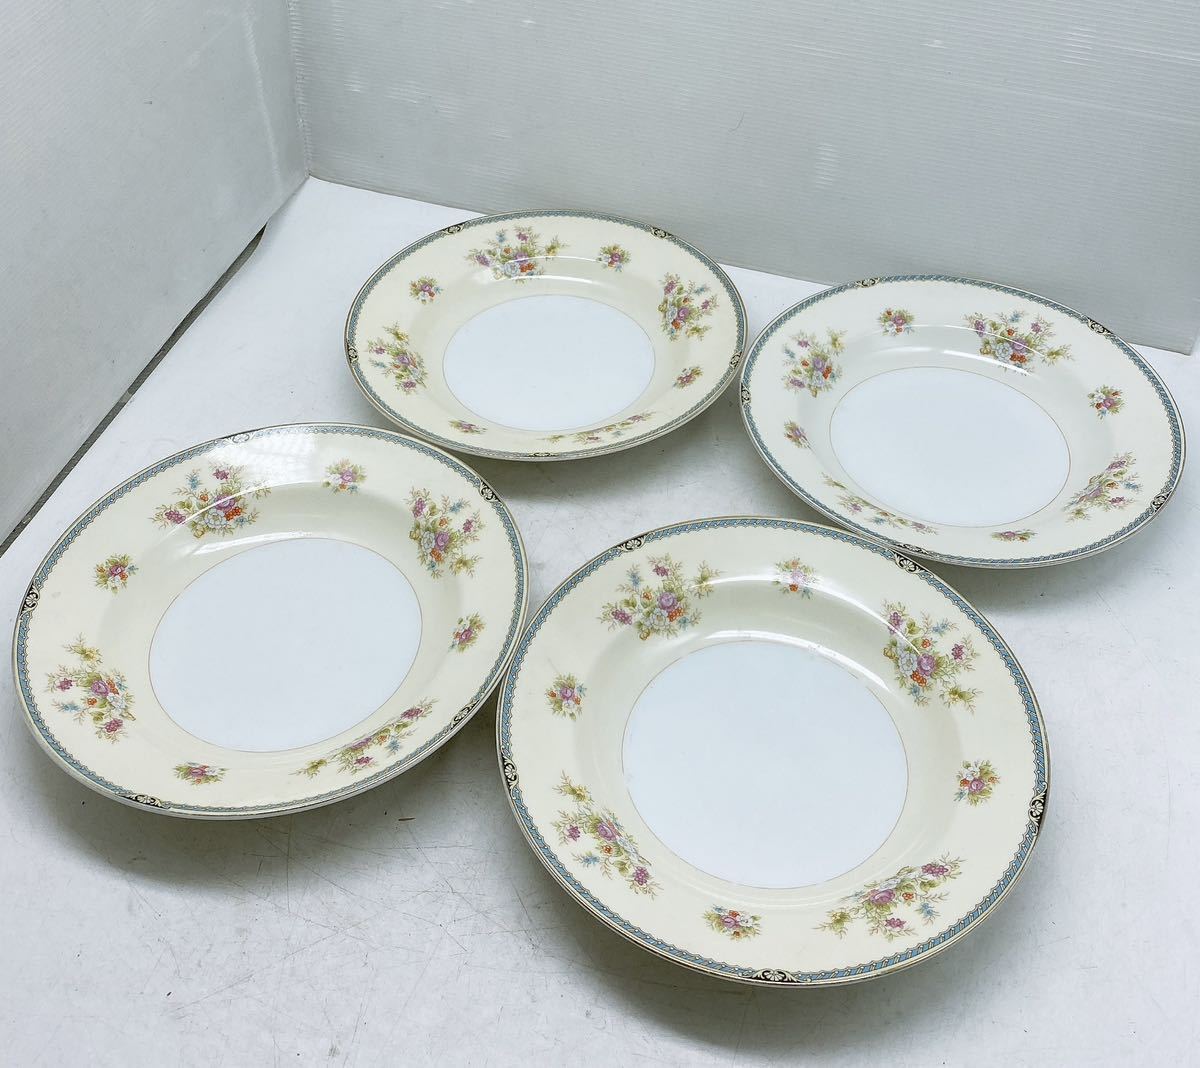  редкость Old Noritake Noritake 9 шт. комплект maru ki печать большая тарелка plate средняя тарелка цветок узор Япония керамика день . античный retro золотая краска коллекция 